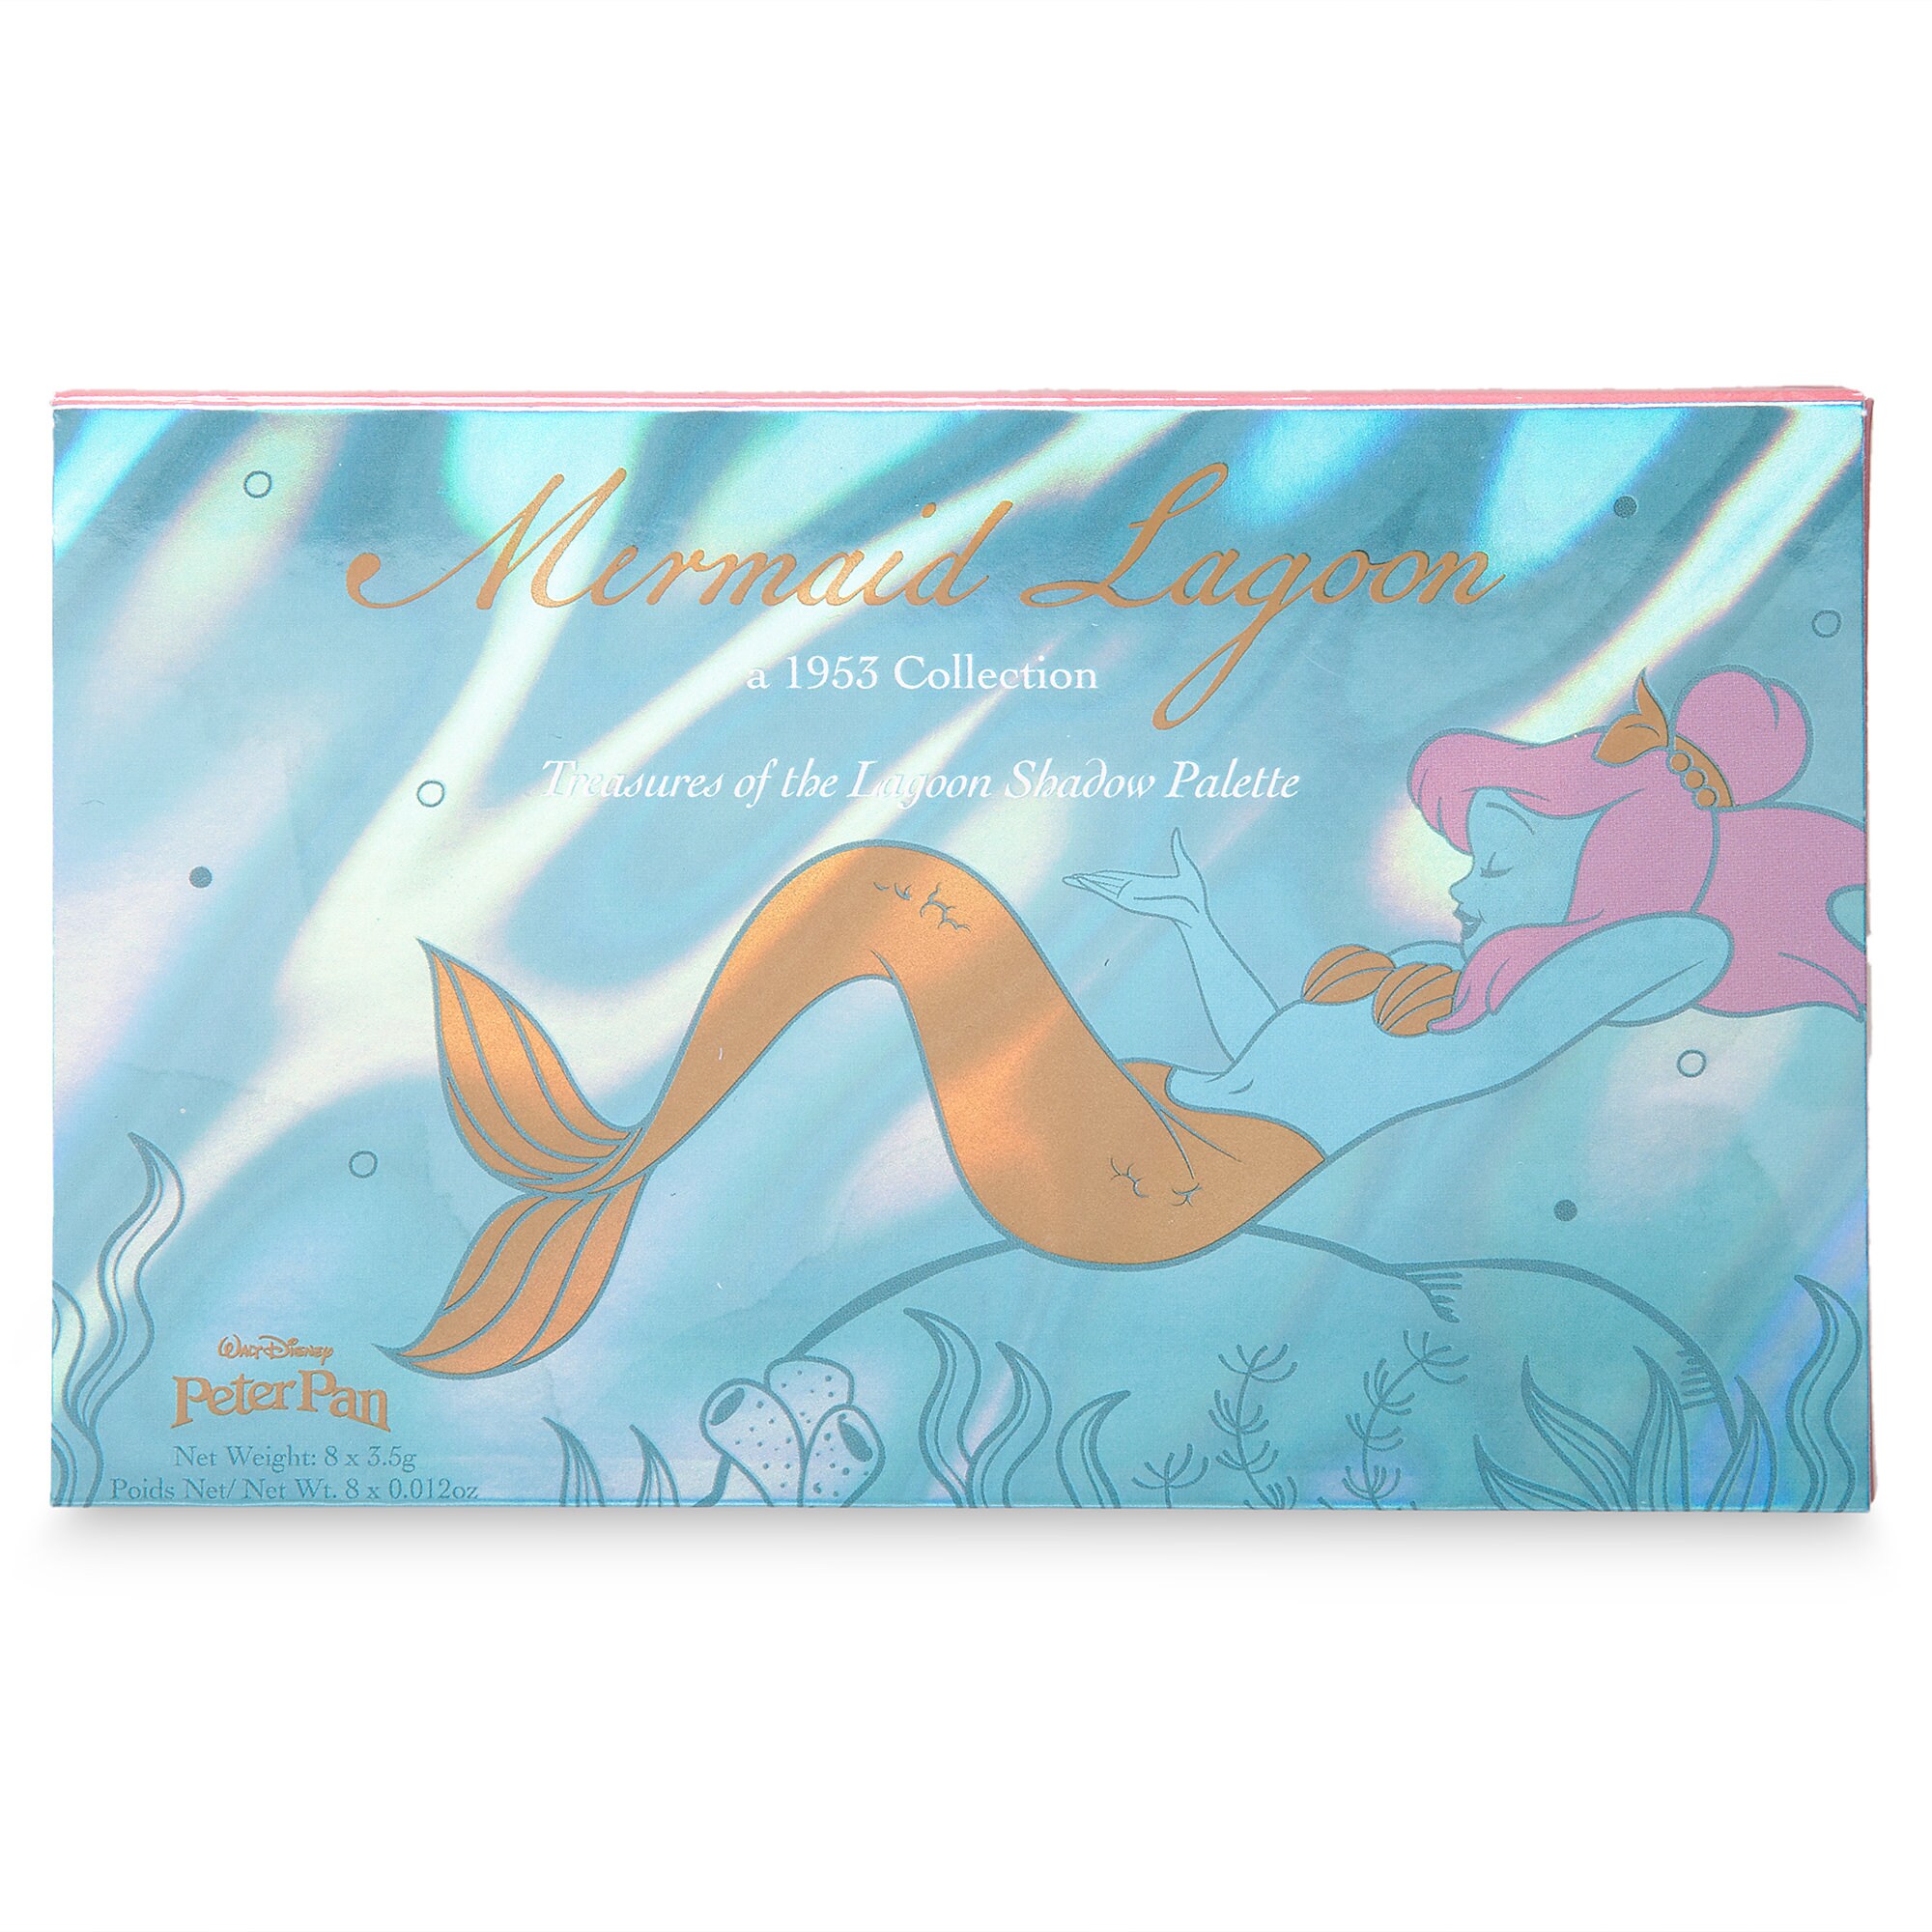 Peter Pan Mermaid Lagoon Shadow Palette by Bésame